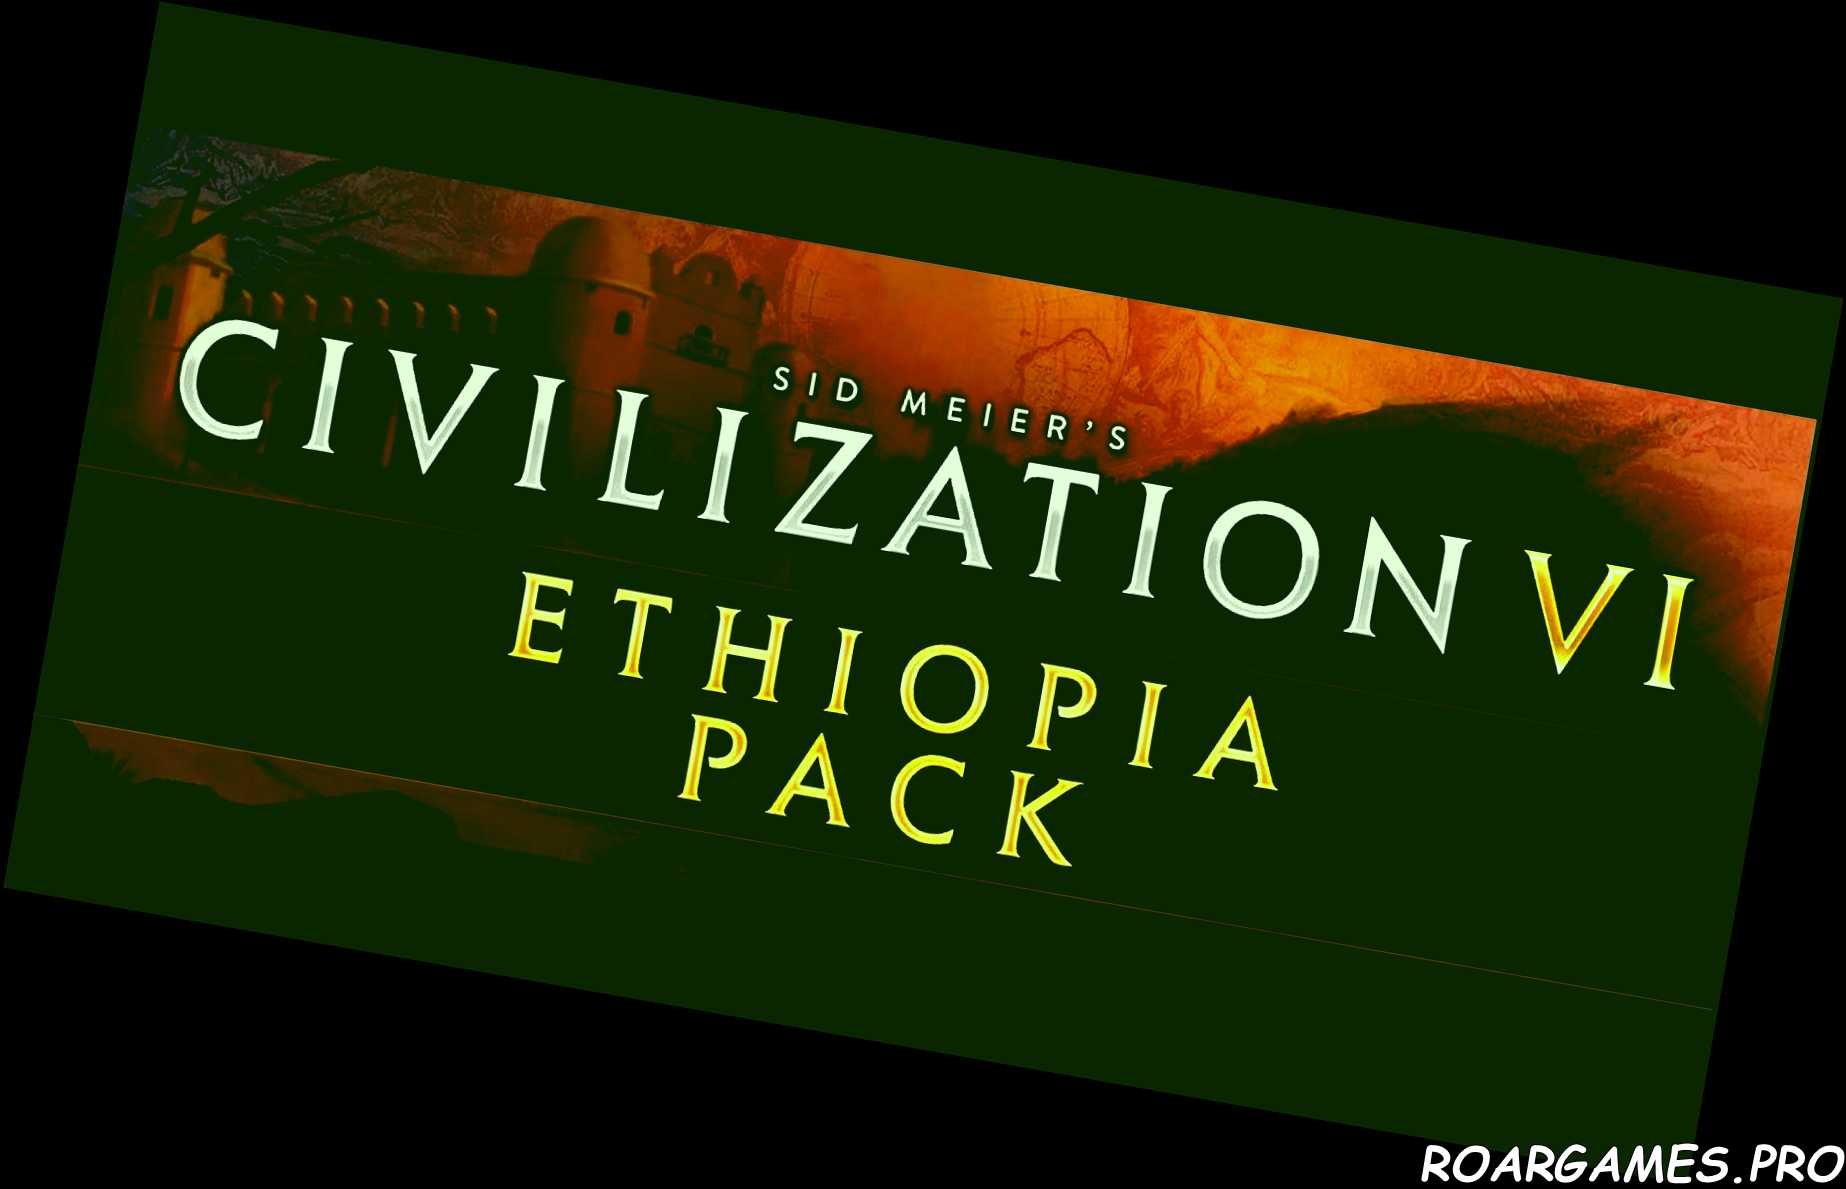 Civilization VI Ethiopia Pack feature image